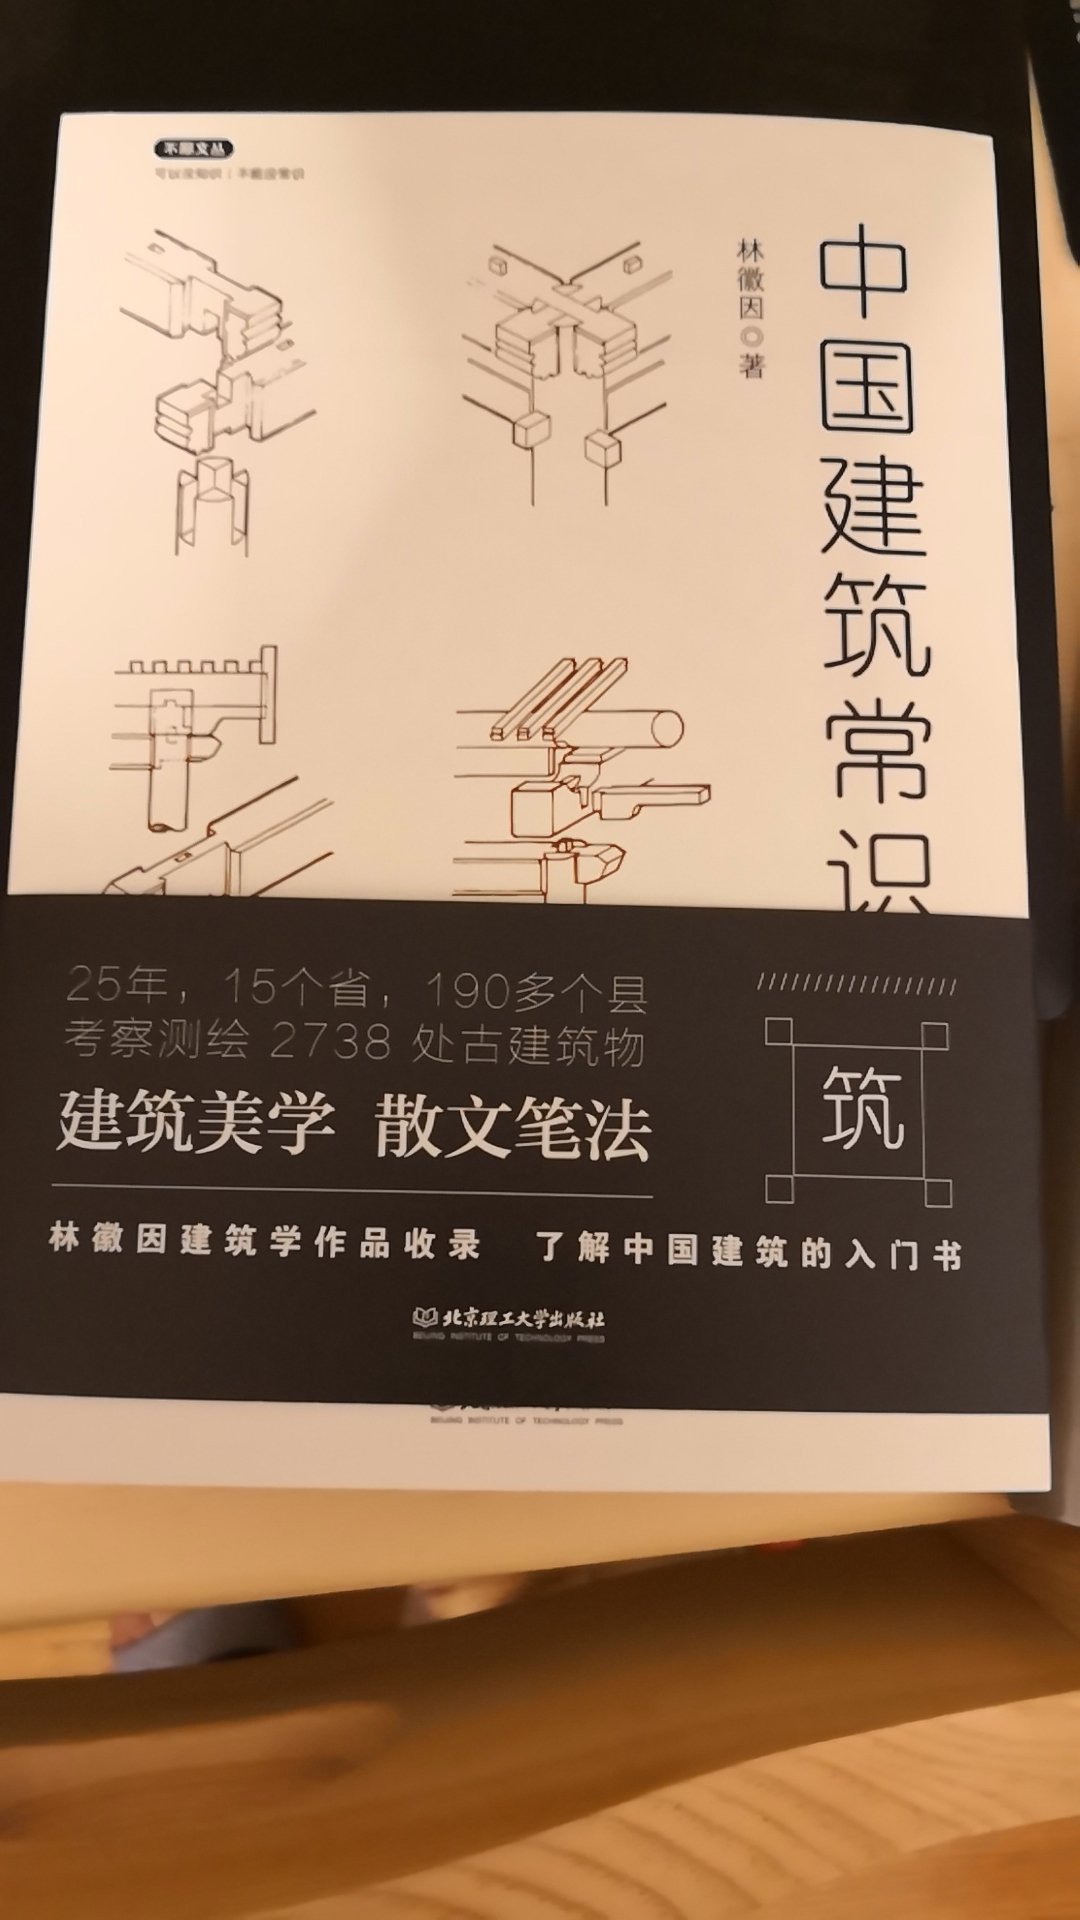 很不错的一本书，了解中国建筑常识很有帮助